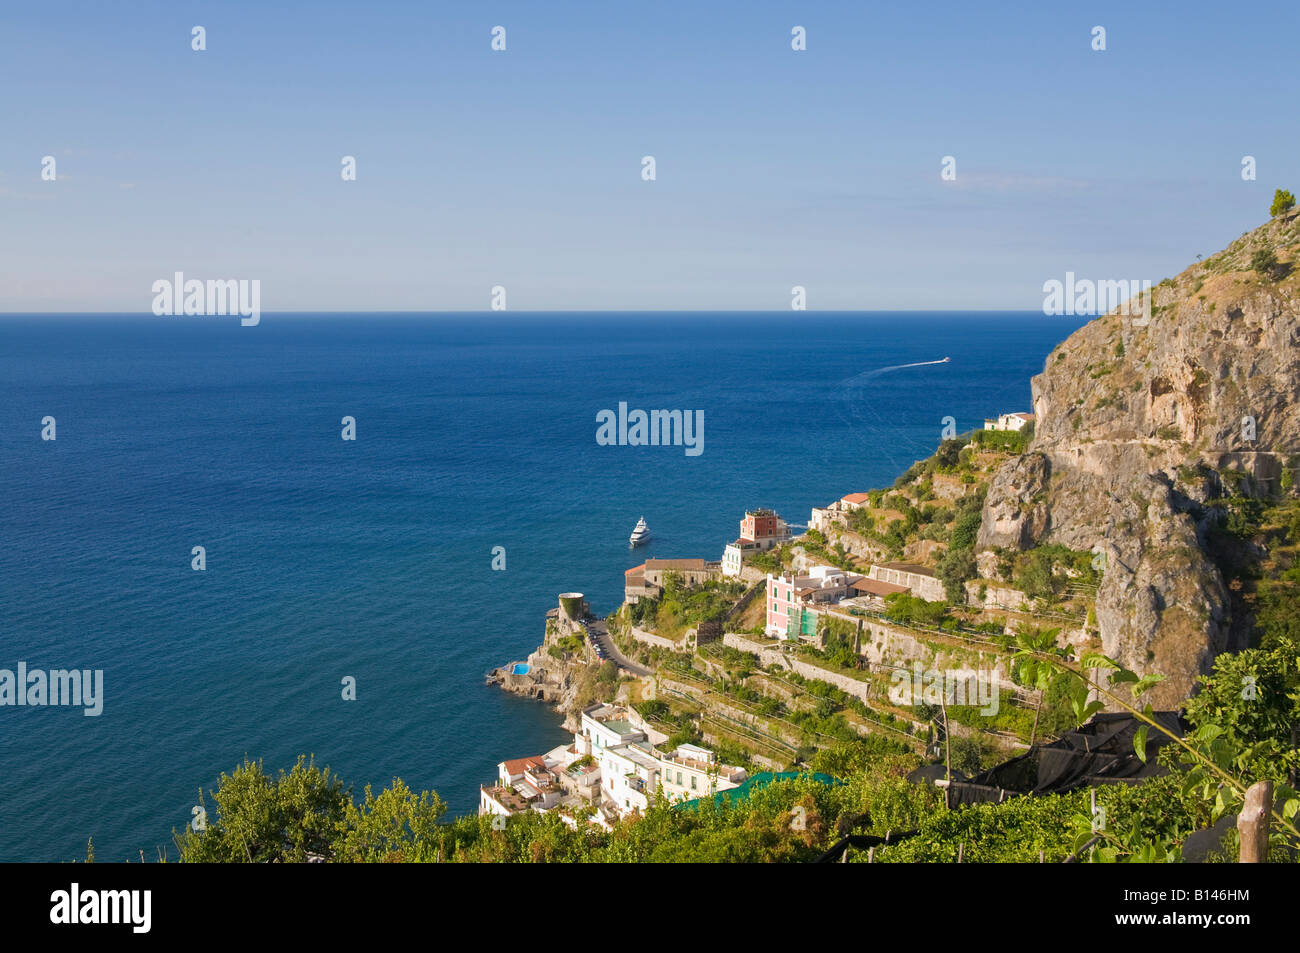 Altrani, Amalfi coast, Campania, Italy Stock Photo - Alamy